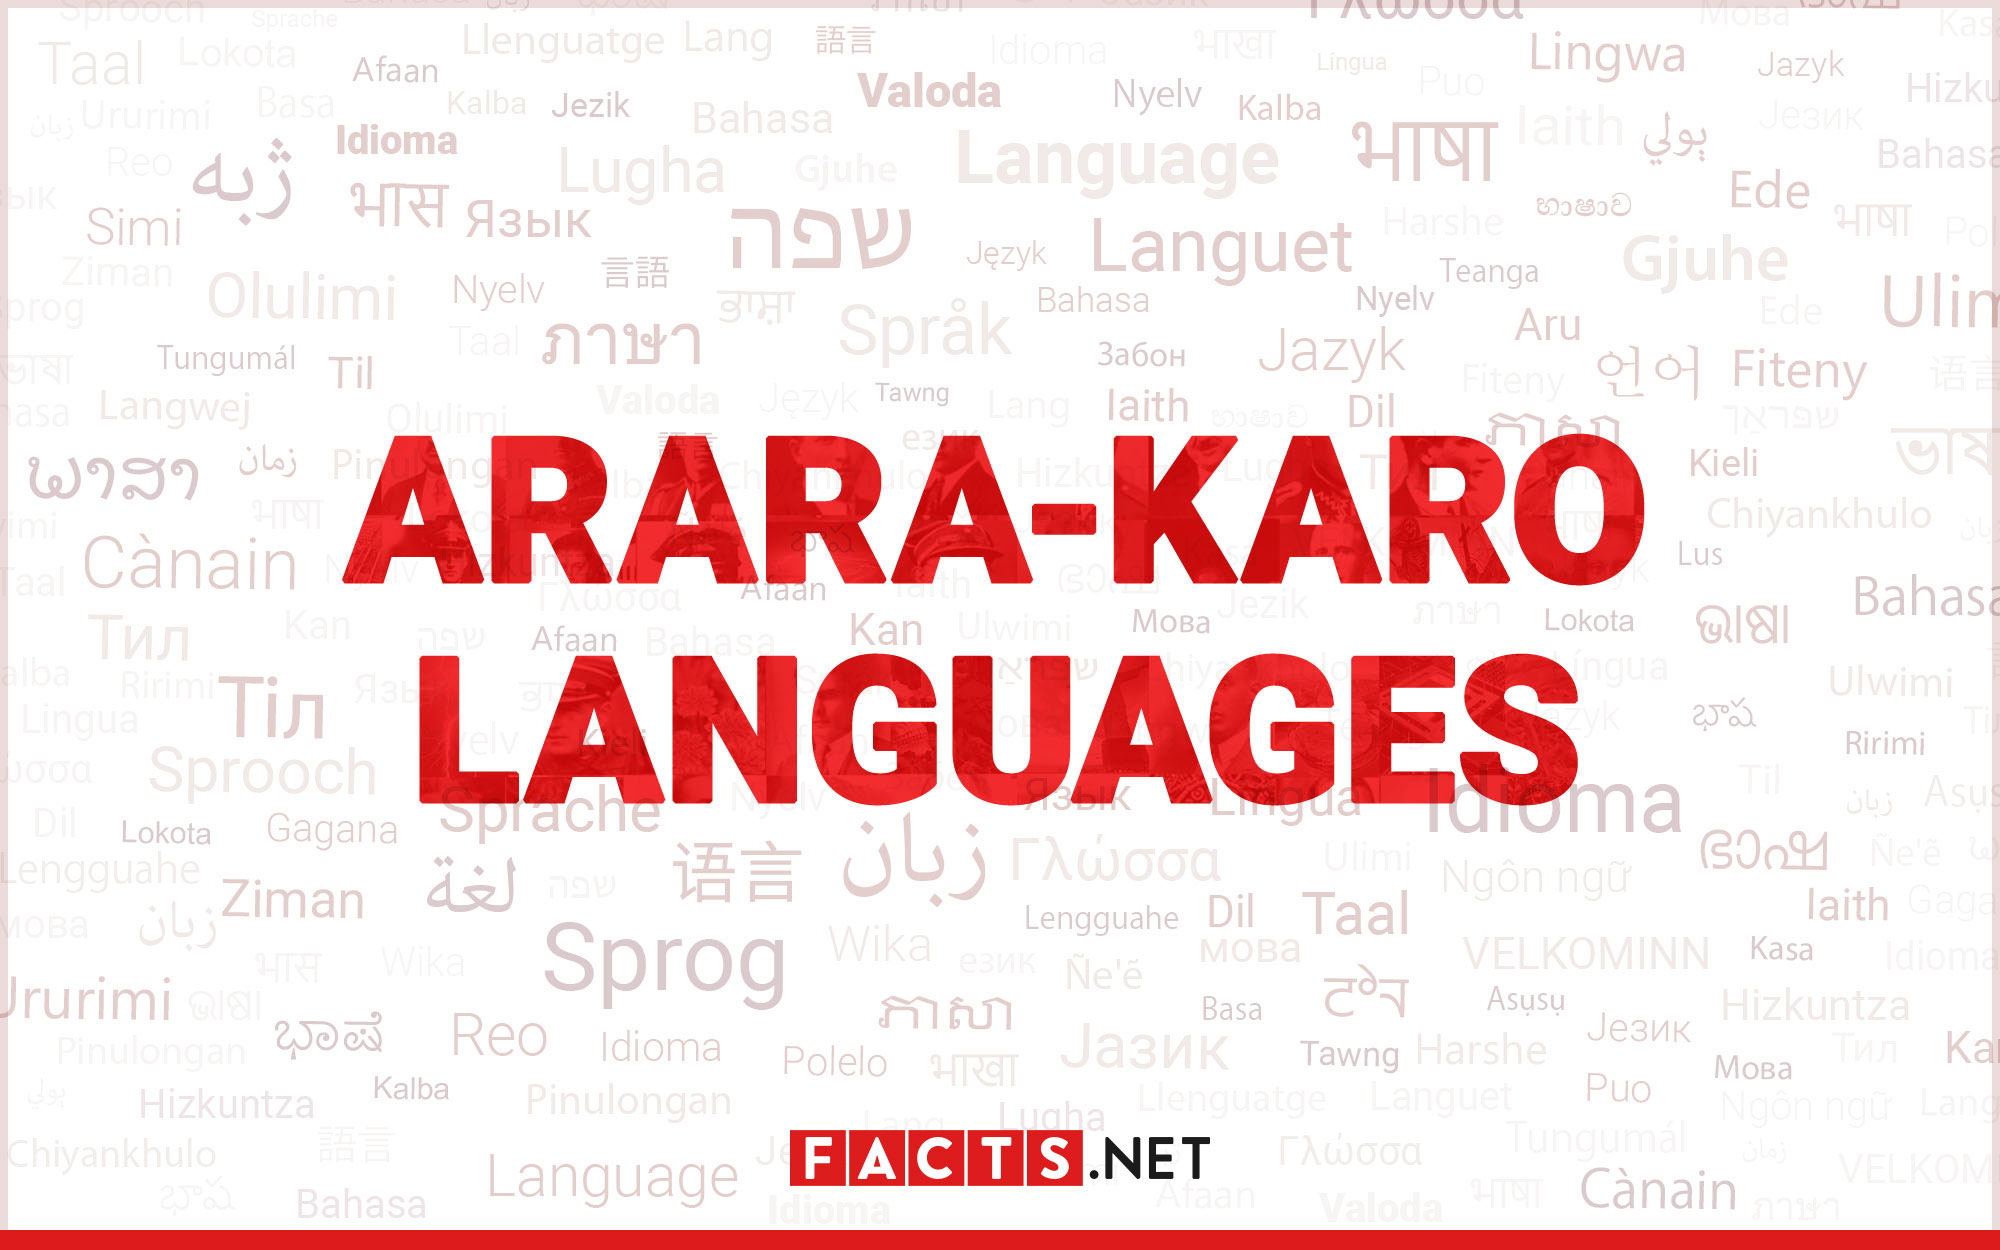 10-extraordinary-facts-about-arara-karo-languages